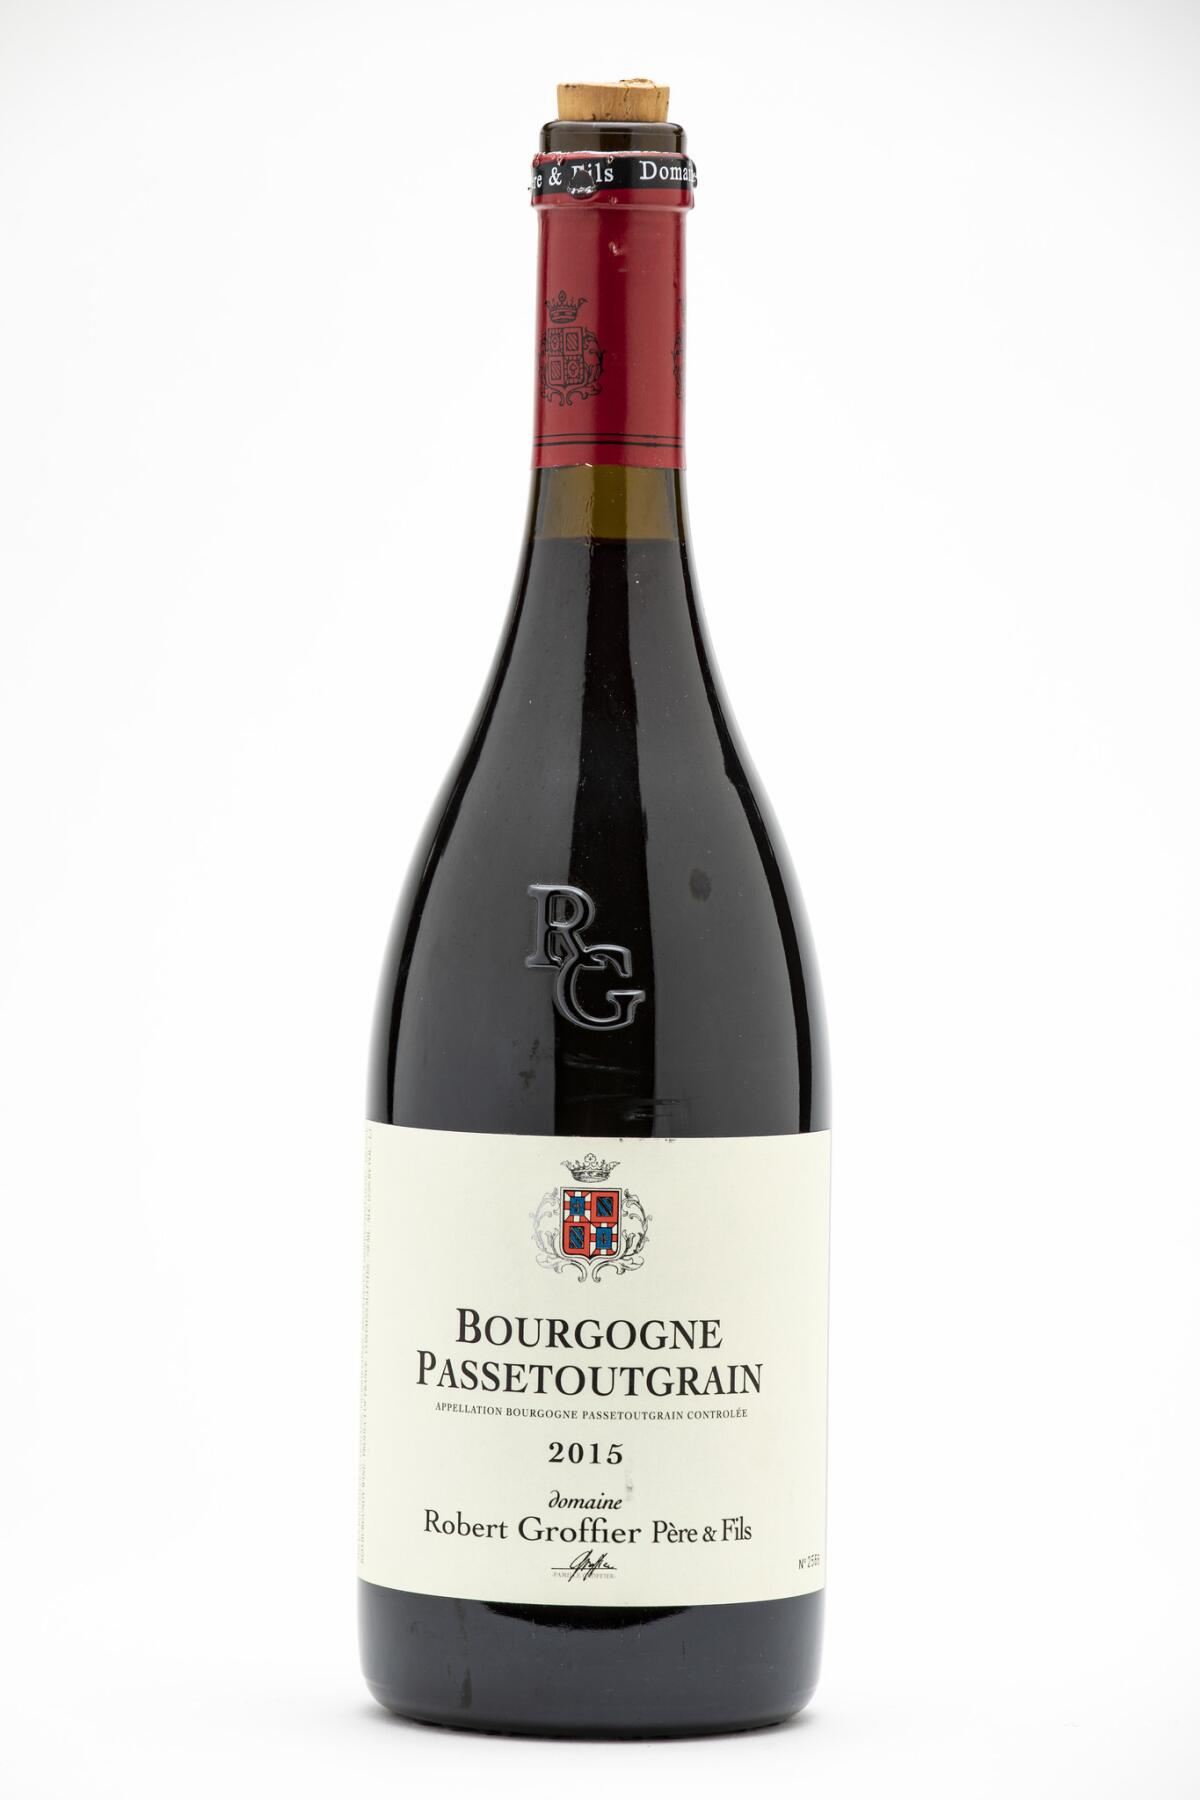 Robert Groffier Pere & Fils - Bourgogne Passetoutgrain.